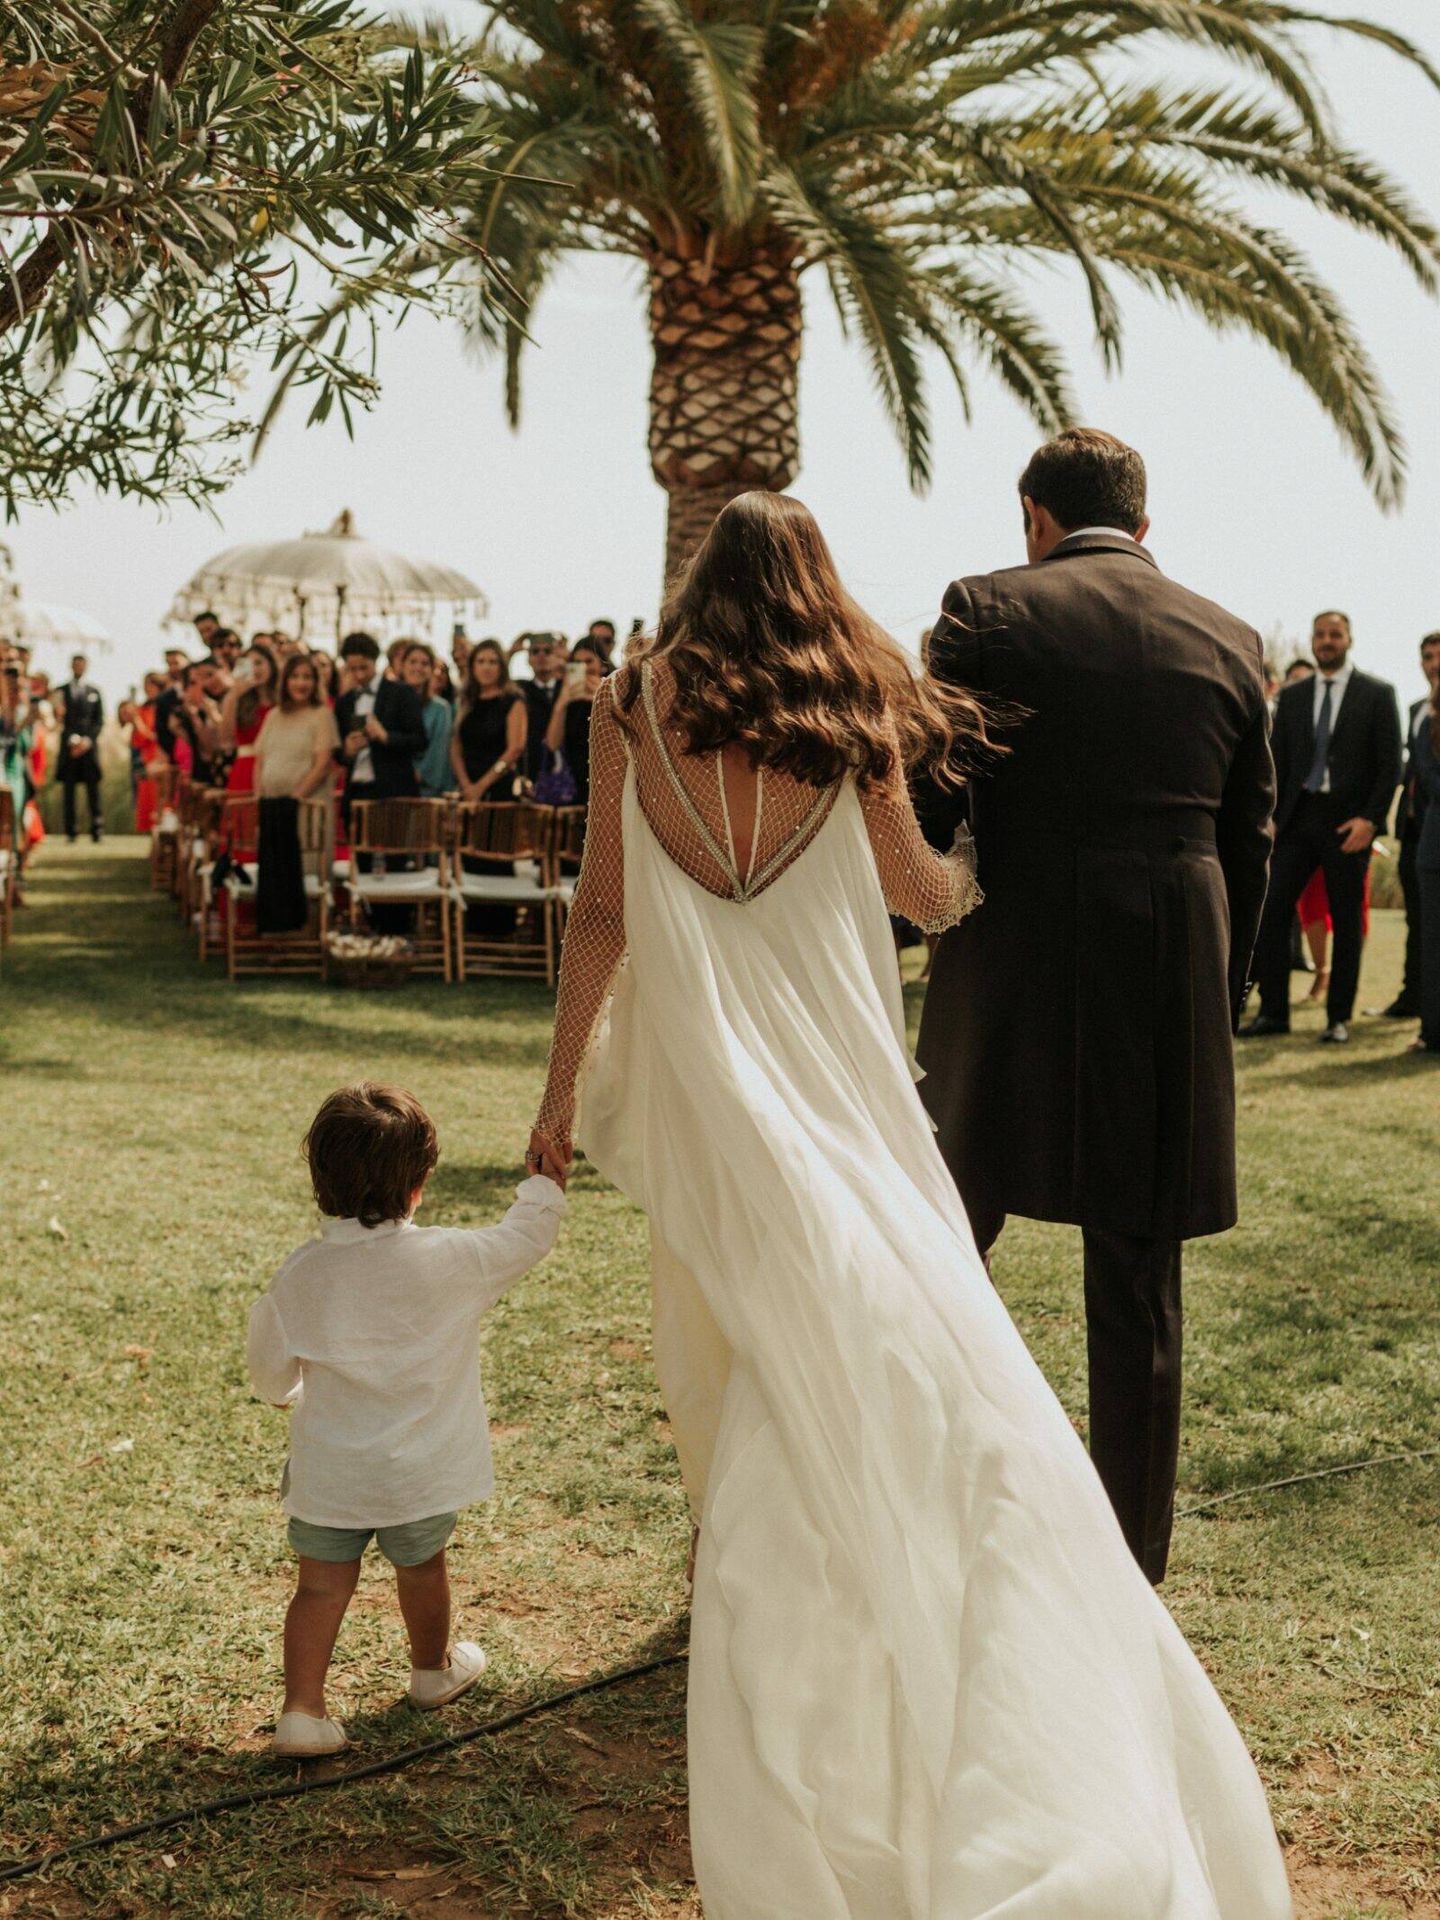 La boda de Begoña en Marbella. (Foto Lucía Jiménez)